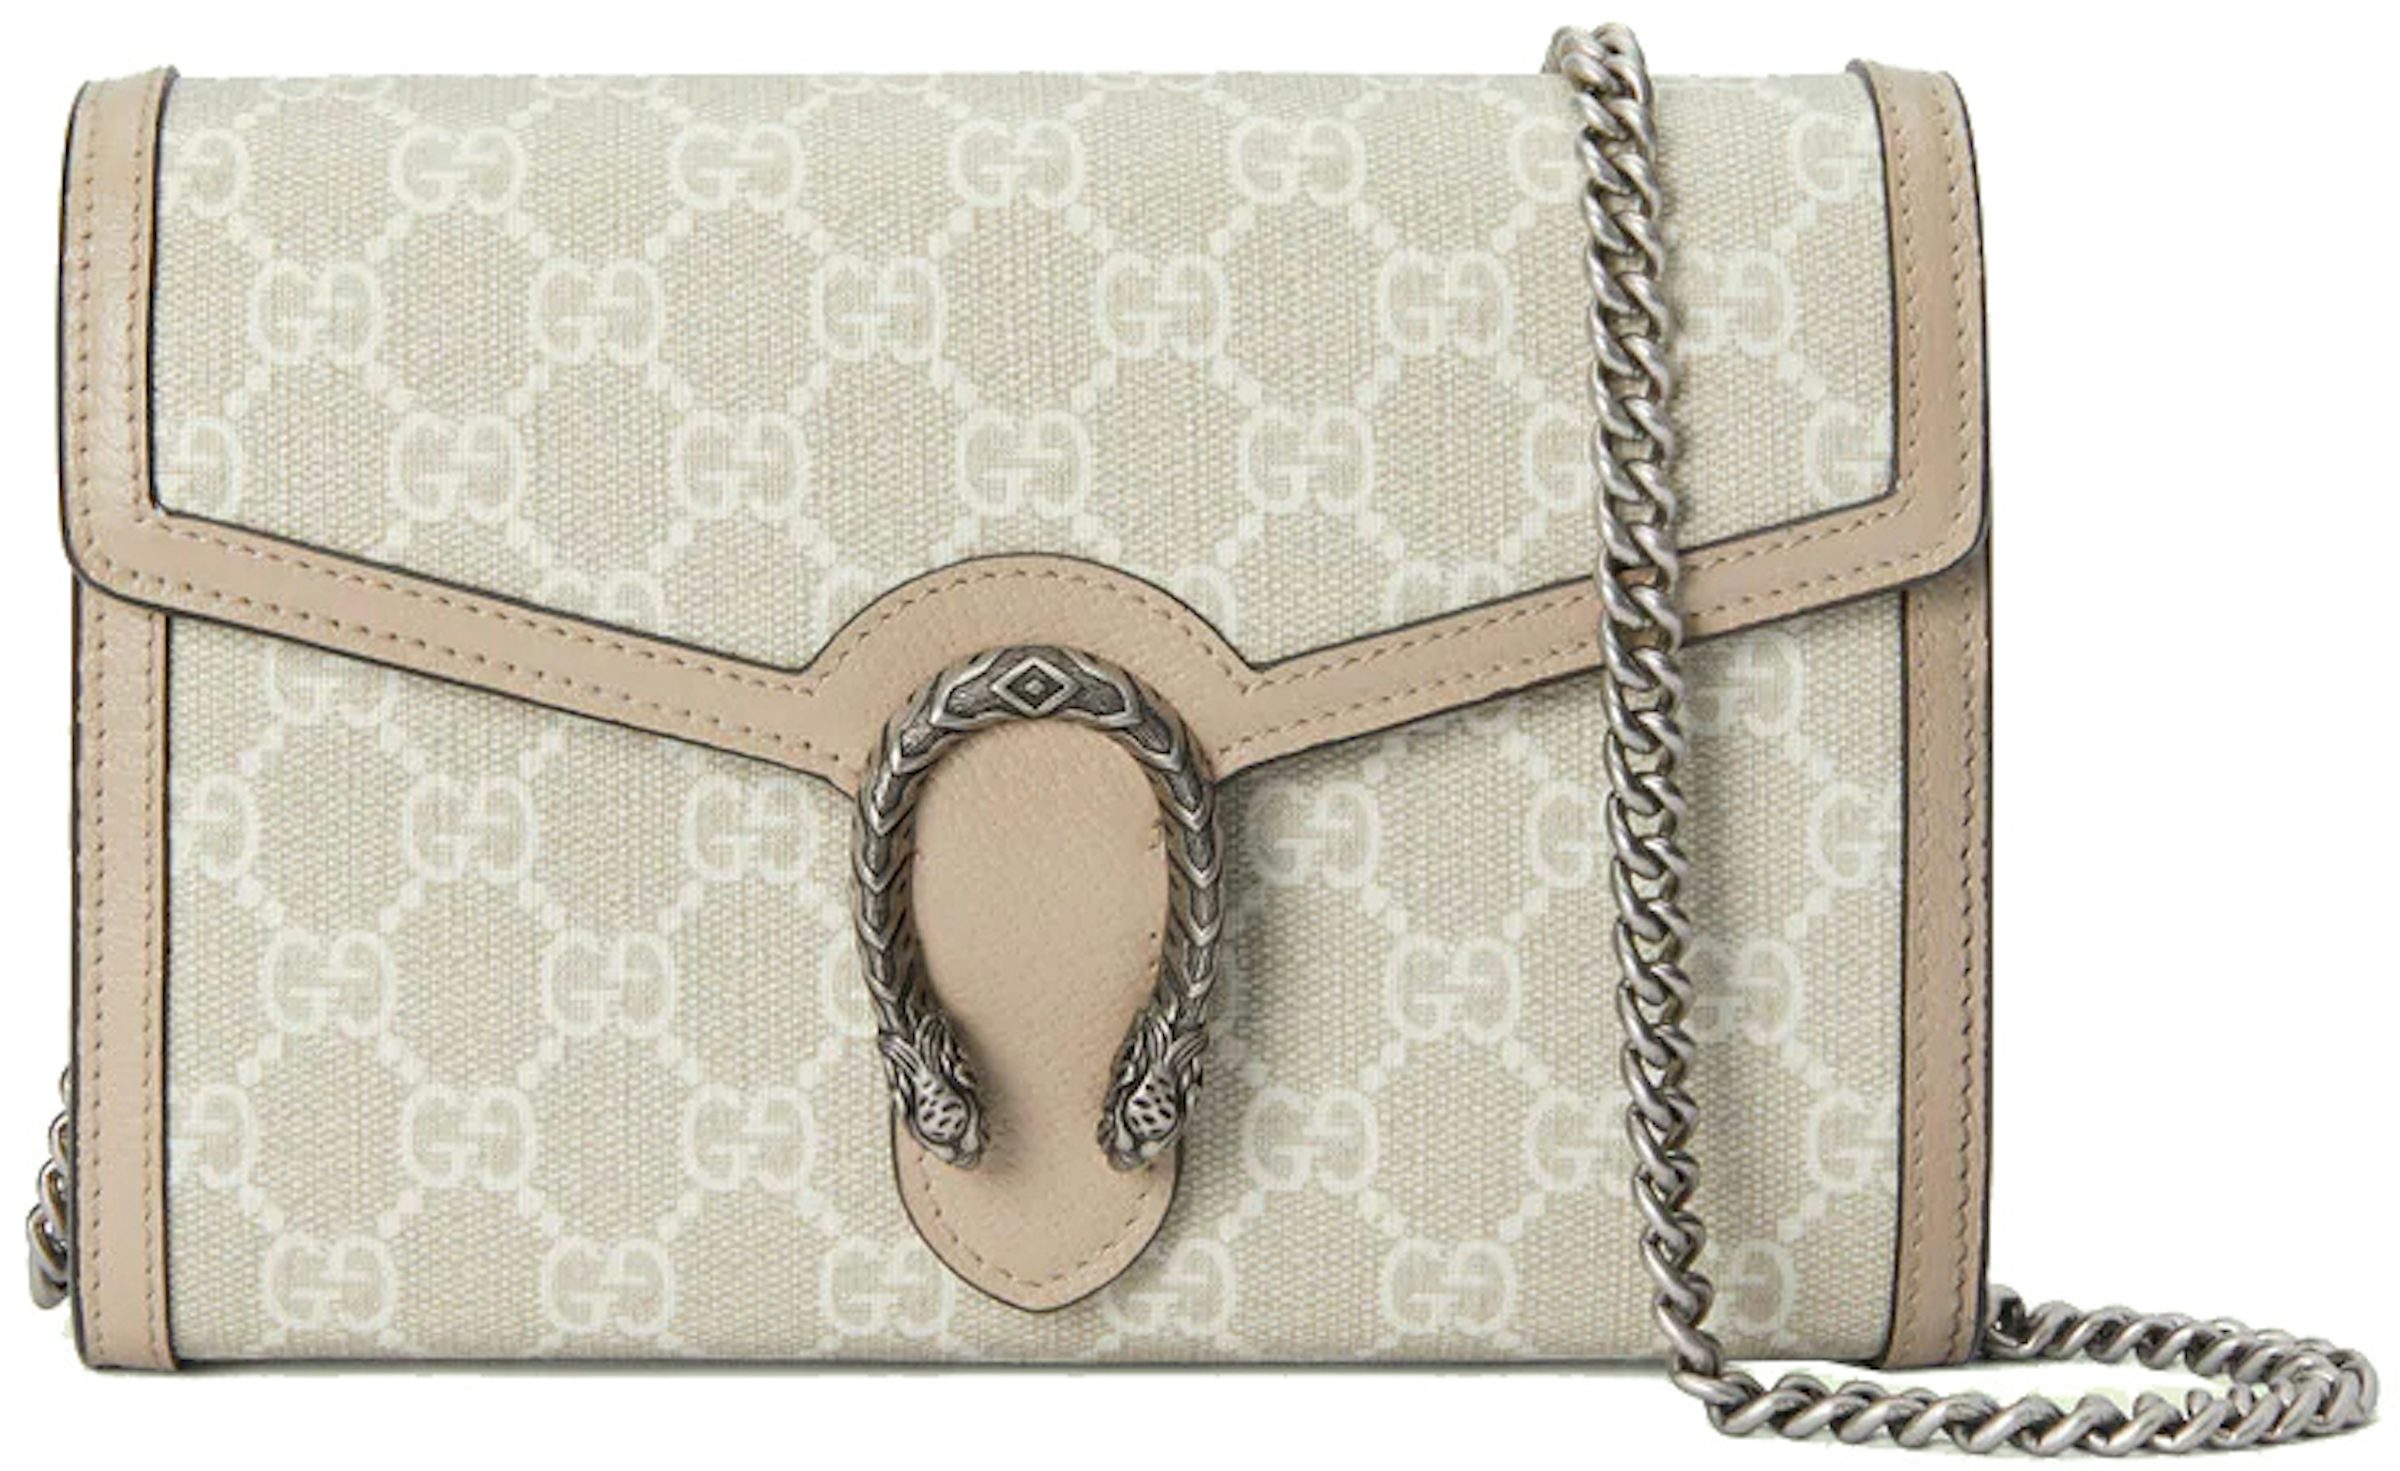 Gucci Dionysus Chain Wallet Beige/White